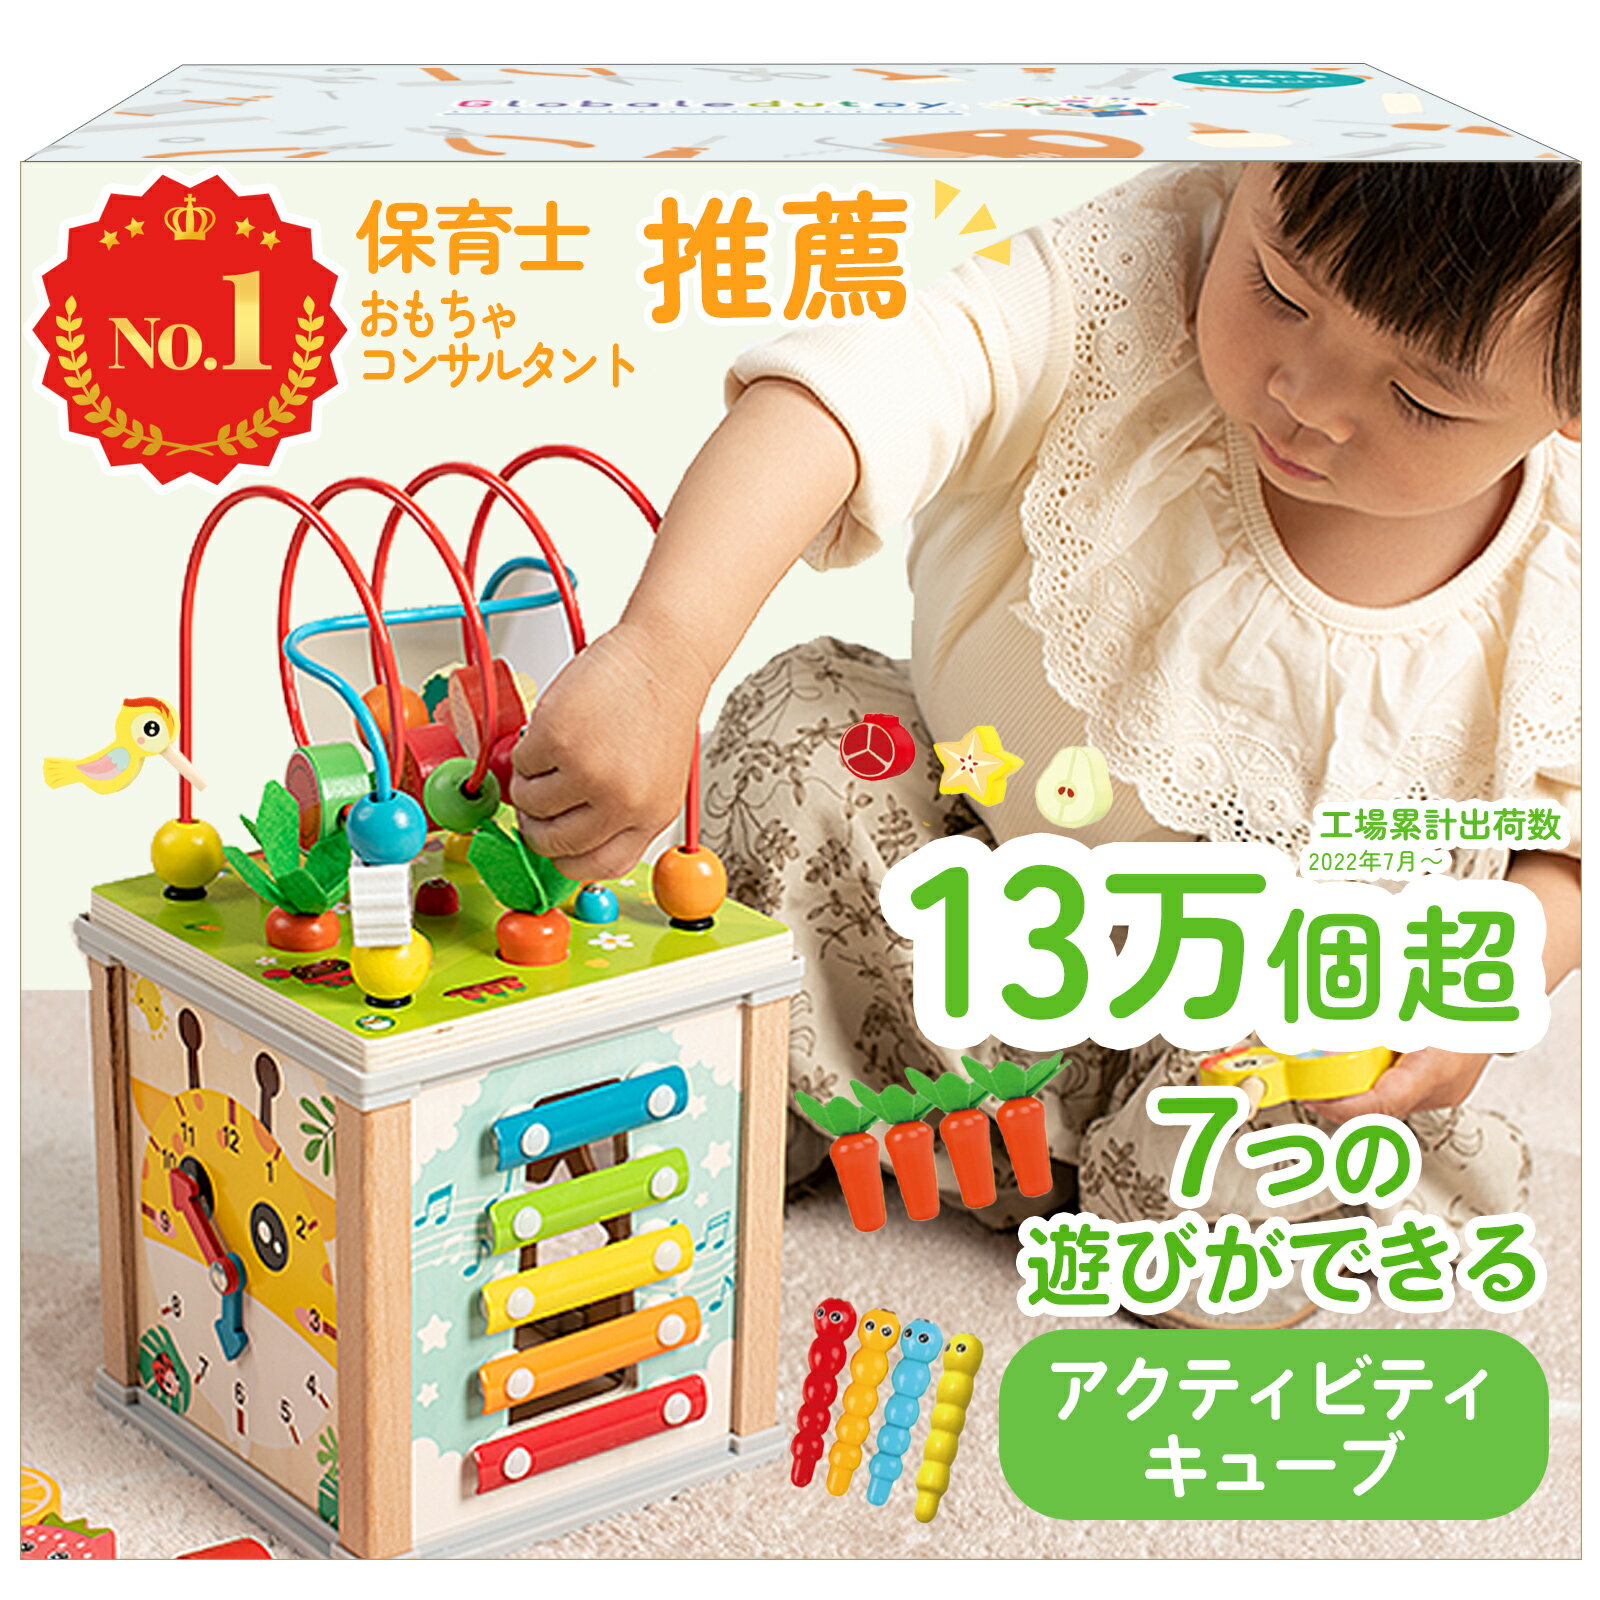 モンテッソーリおもちゃ 赤ちゃん 玩具 0歳 1歳 2歳 誕生日プレゼント 知育玩具7in1 アクティビティキューブ 玩具 木製 ルーピング 型はめ 男の子 女の子 木のおもちゃ 